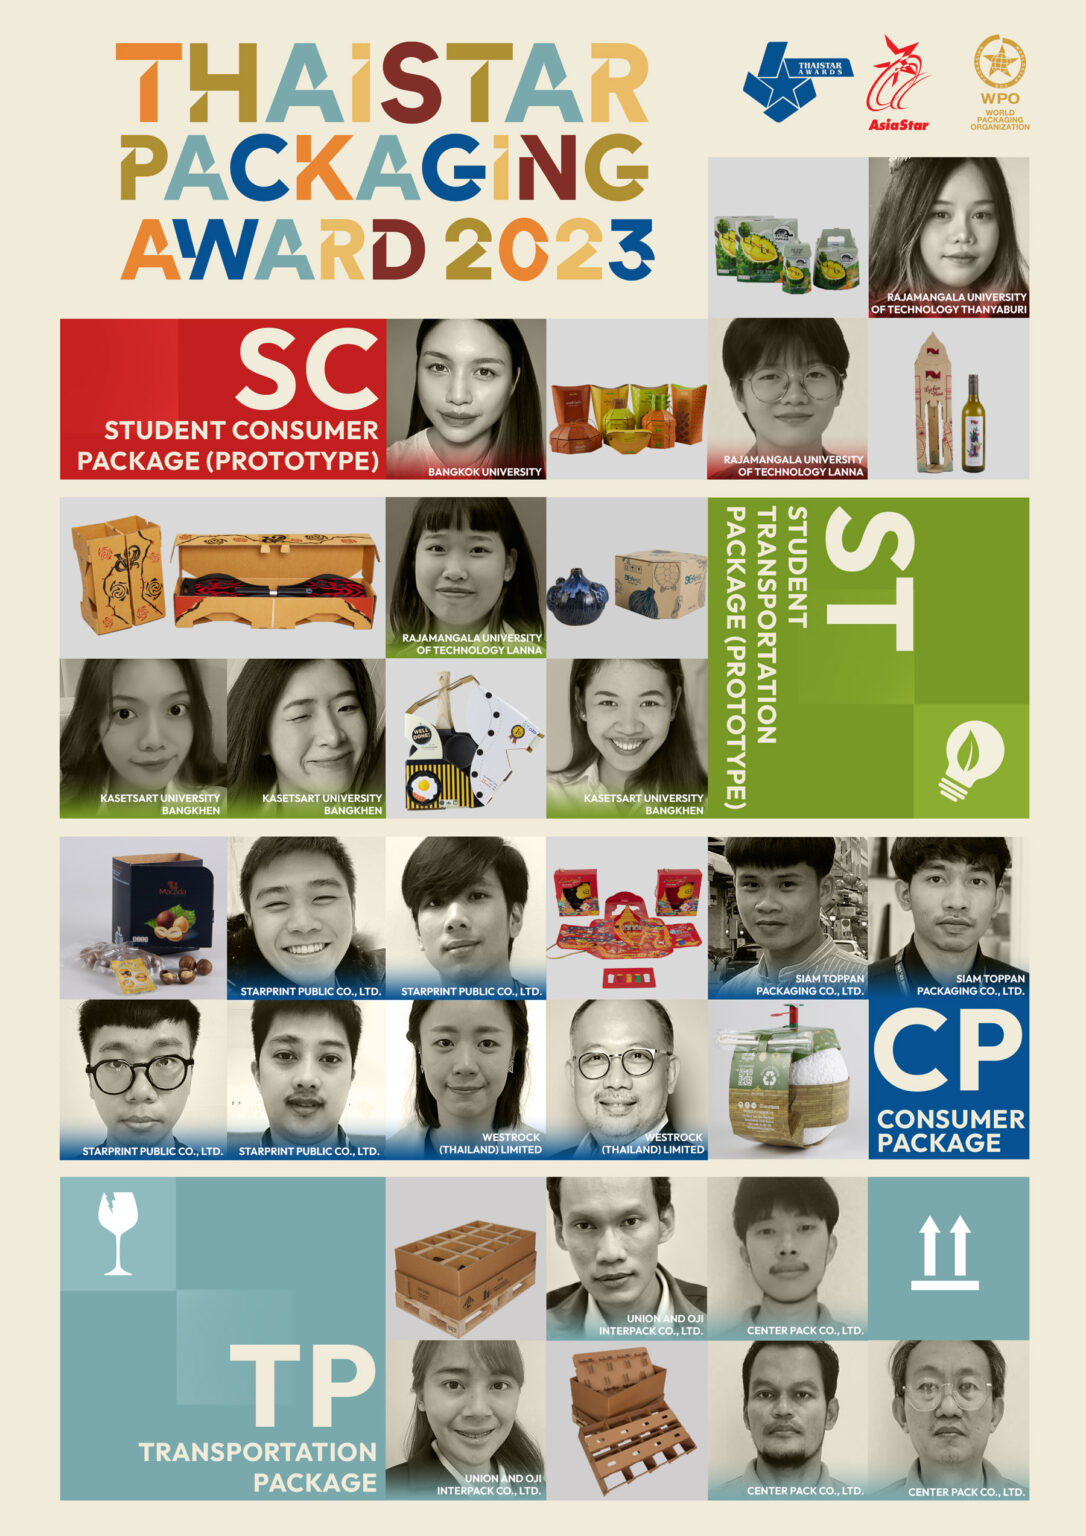 ผลการประกวดบรรจุภัณฑ์ไทย ประจำปี 2566 (ThaiStar Packaging Awards 2023)